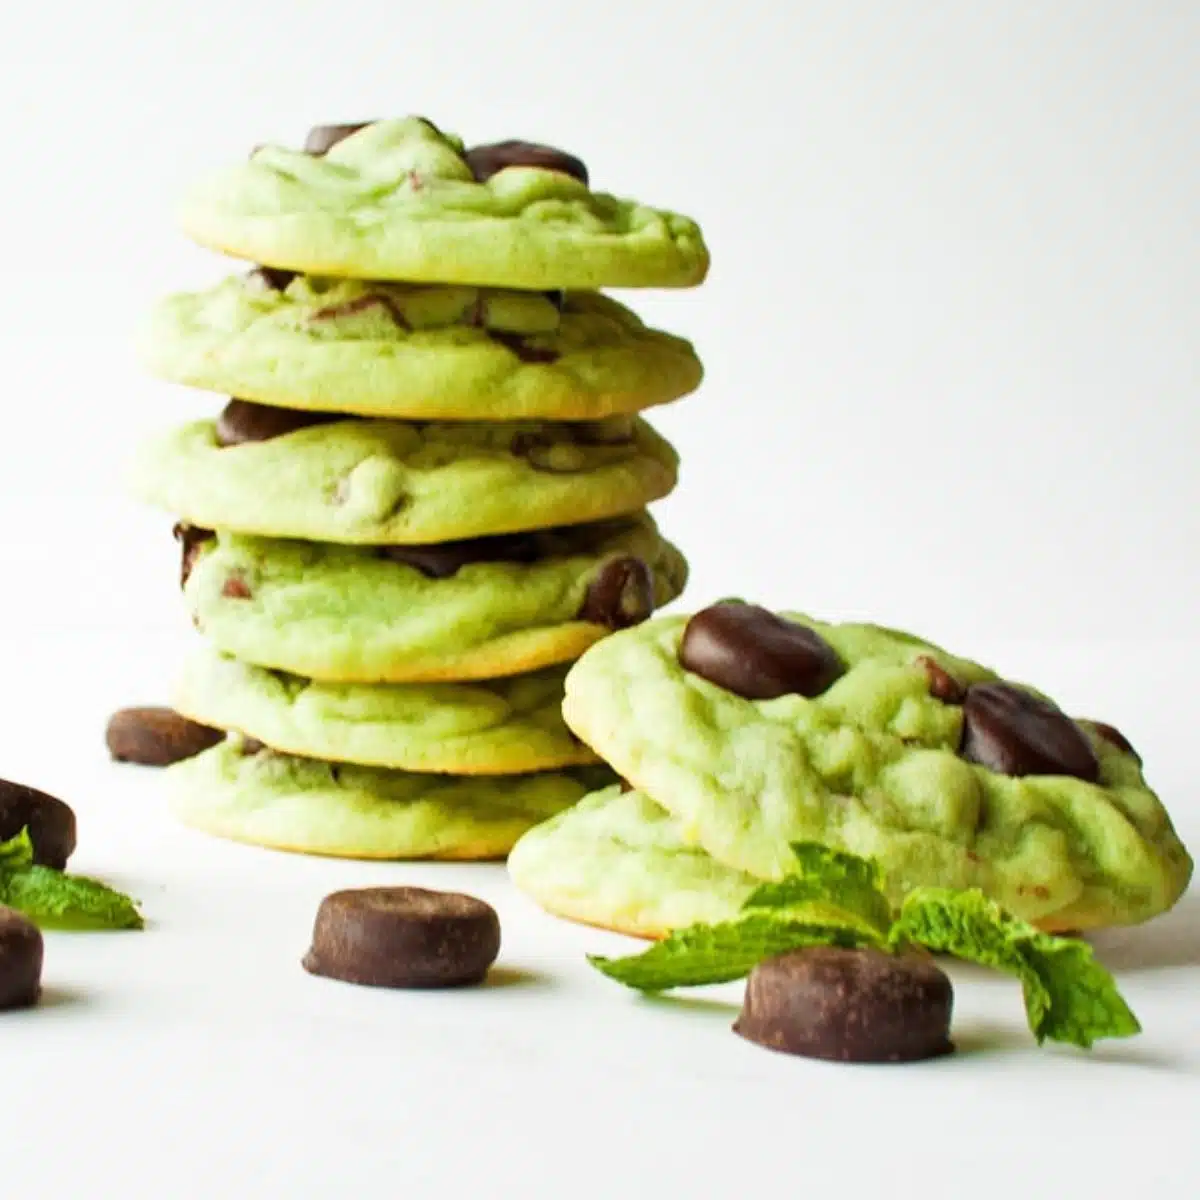 Imagen cuadrada de mini patty cookies York con trocitos de chocolate y menta.